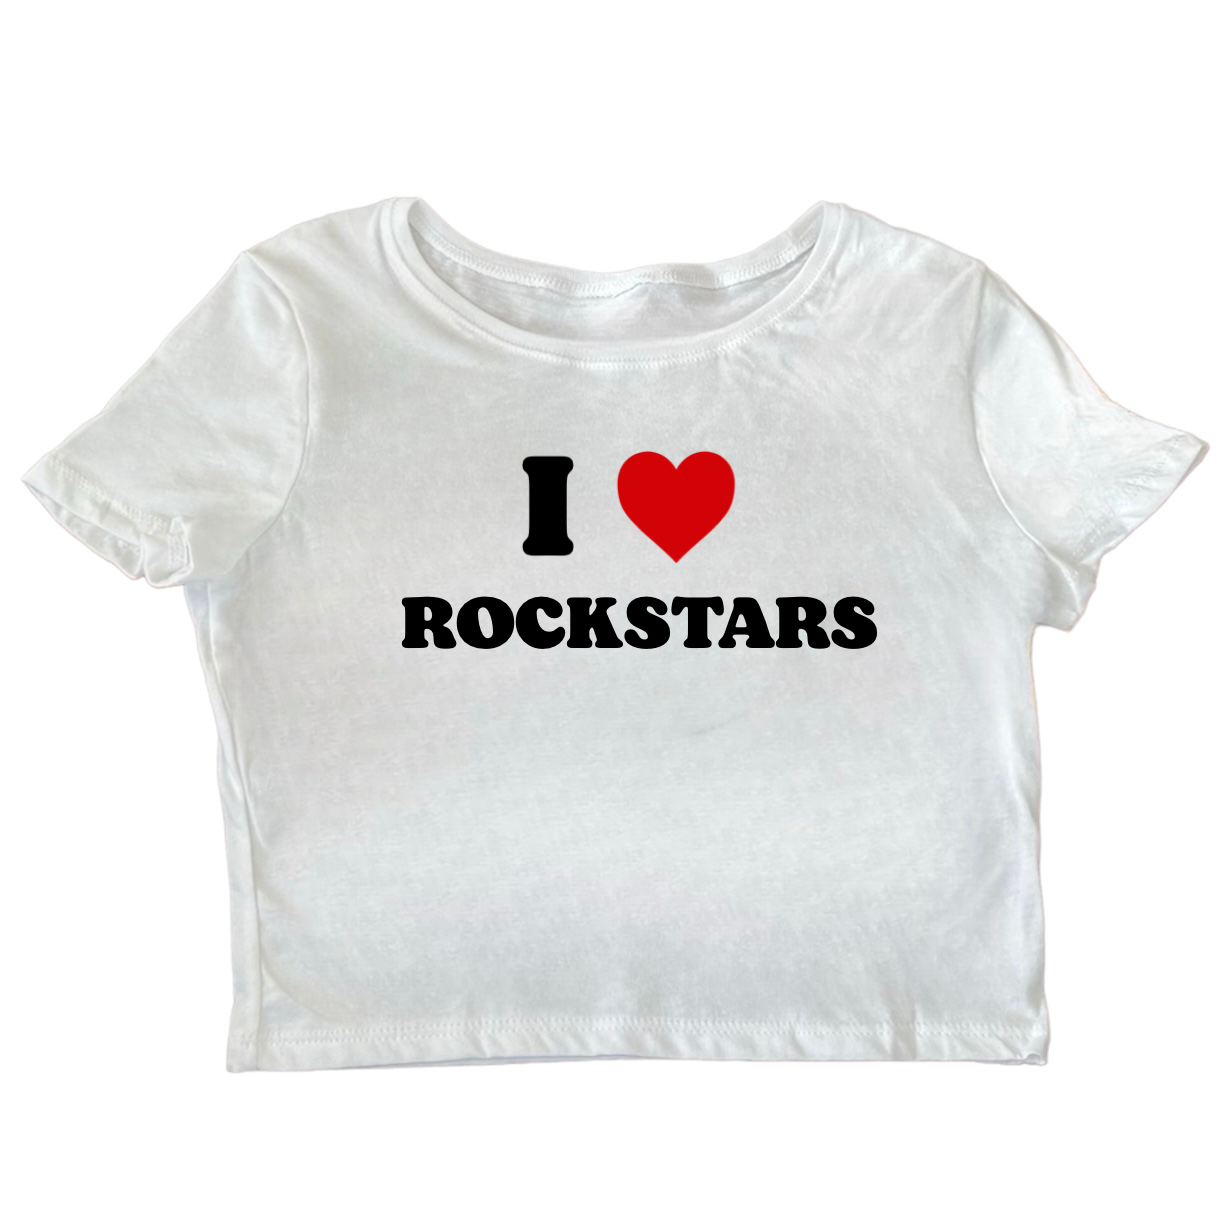 I Heart Rockstars Baby Tee